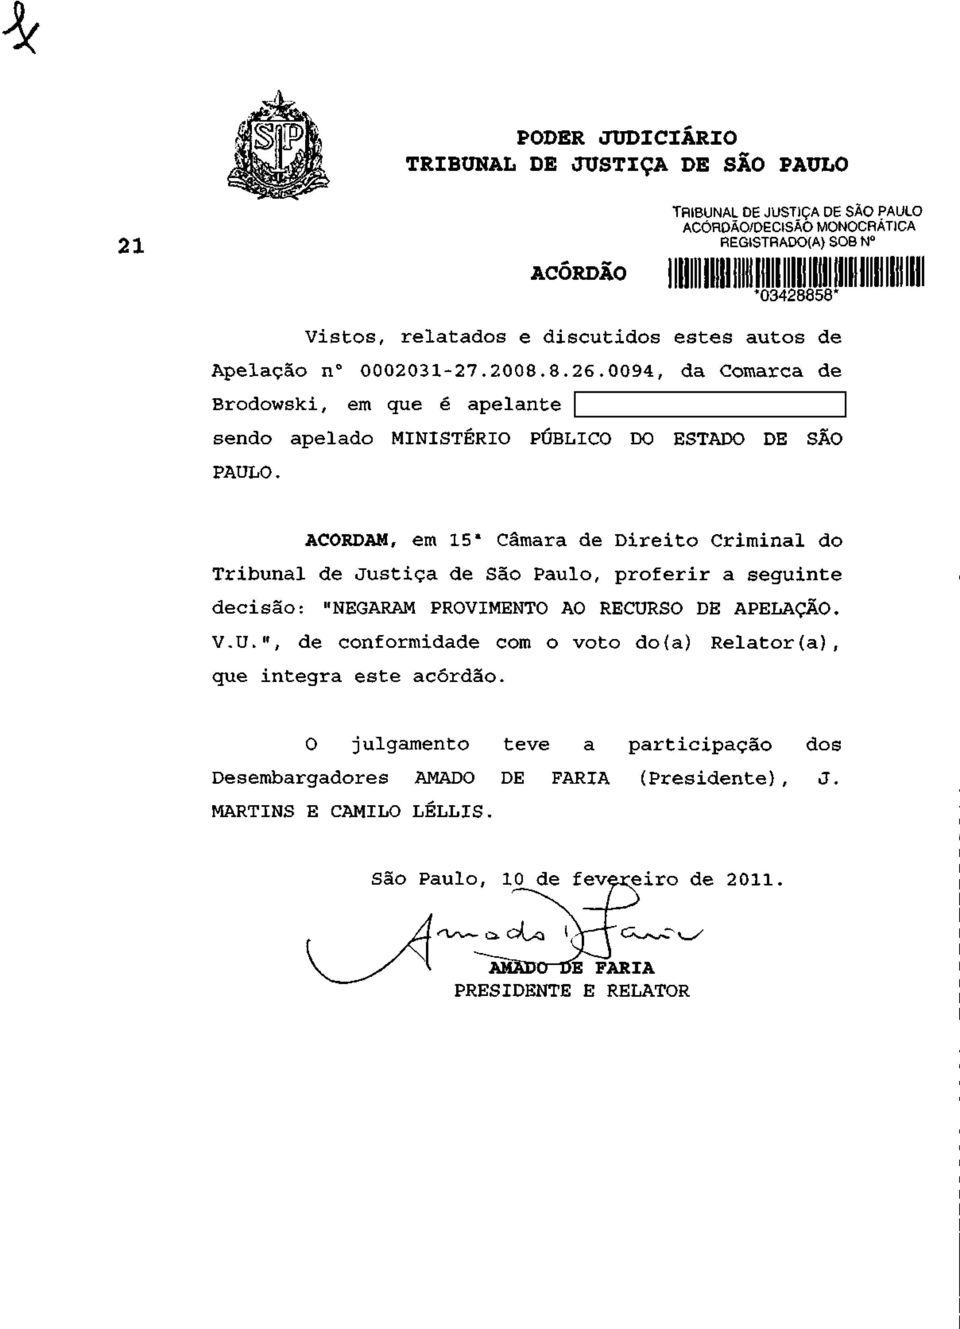 ACORDAM, em 15 a Câmara de Direito Criminal do Tribunal de Justiça de São Paulo, proferir a seguinte decisão: "NEGARAM PROVIMENTO AO RECUR